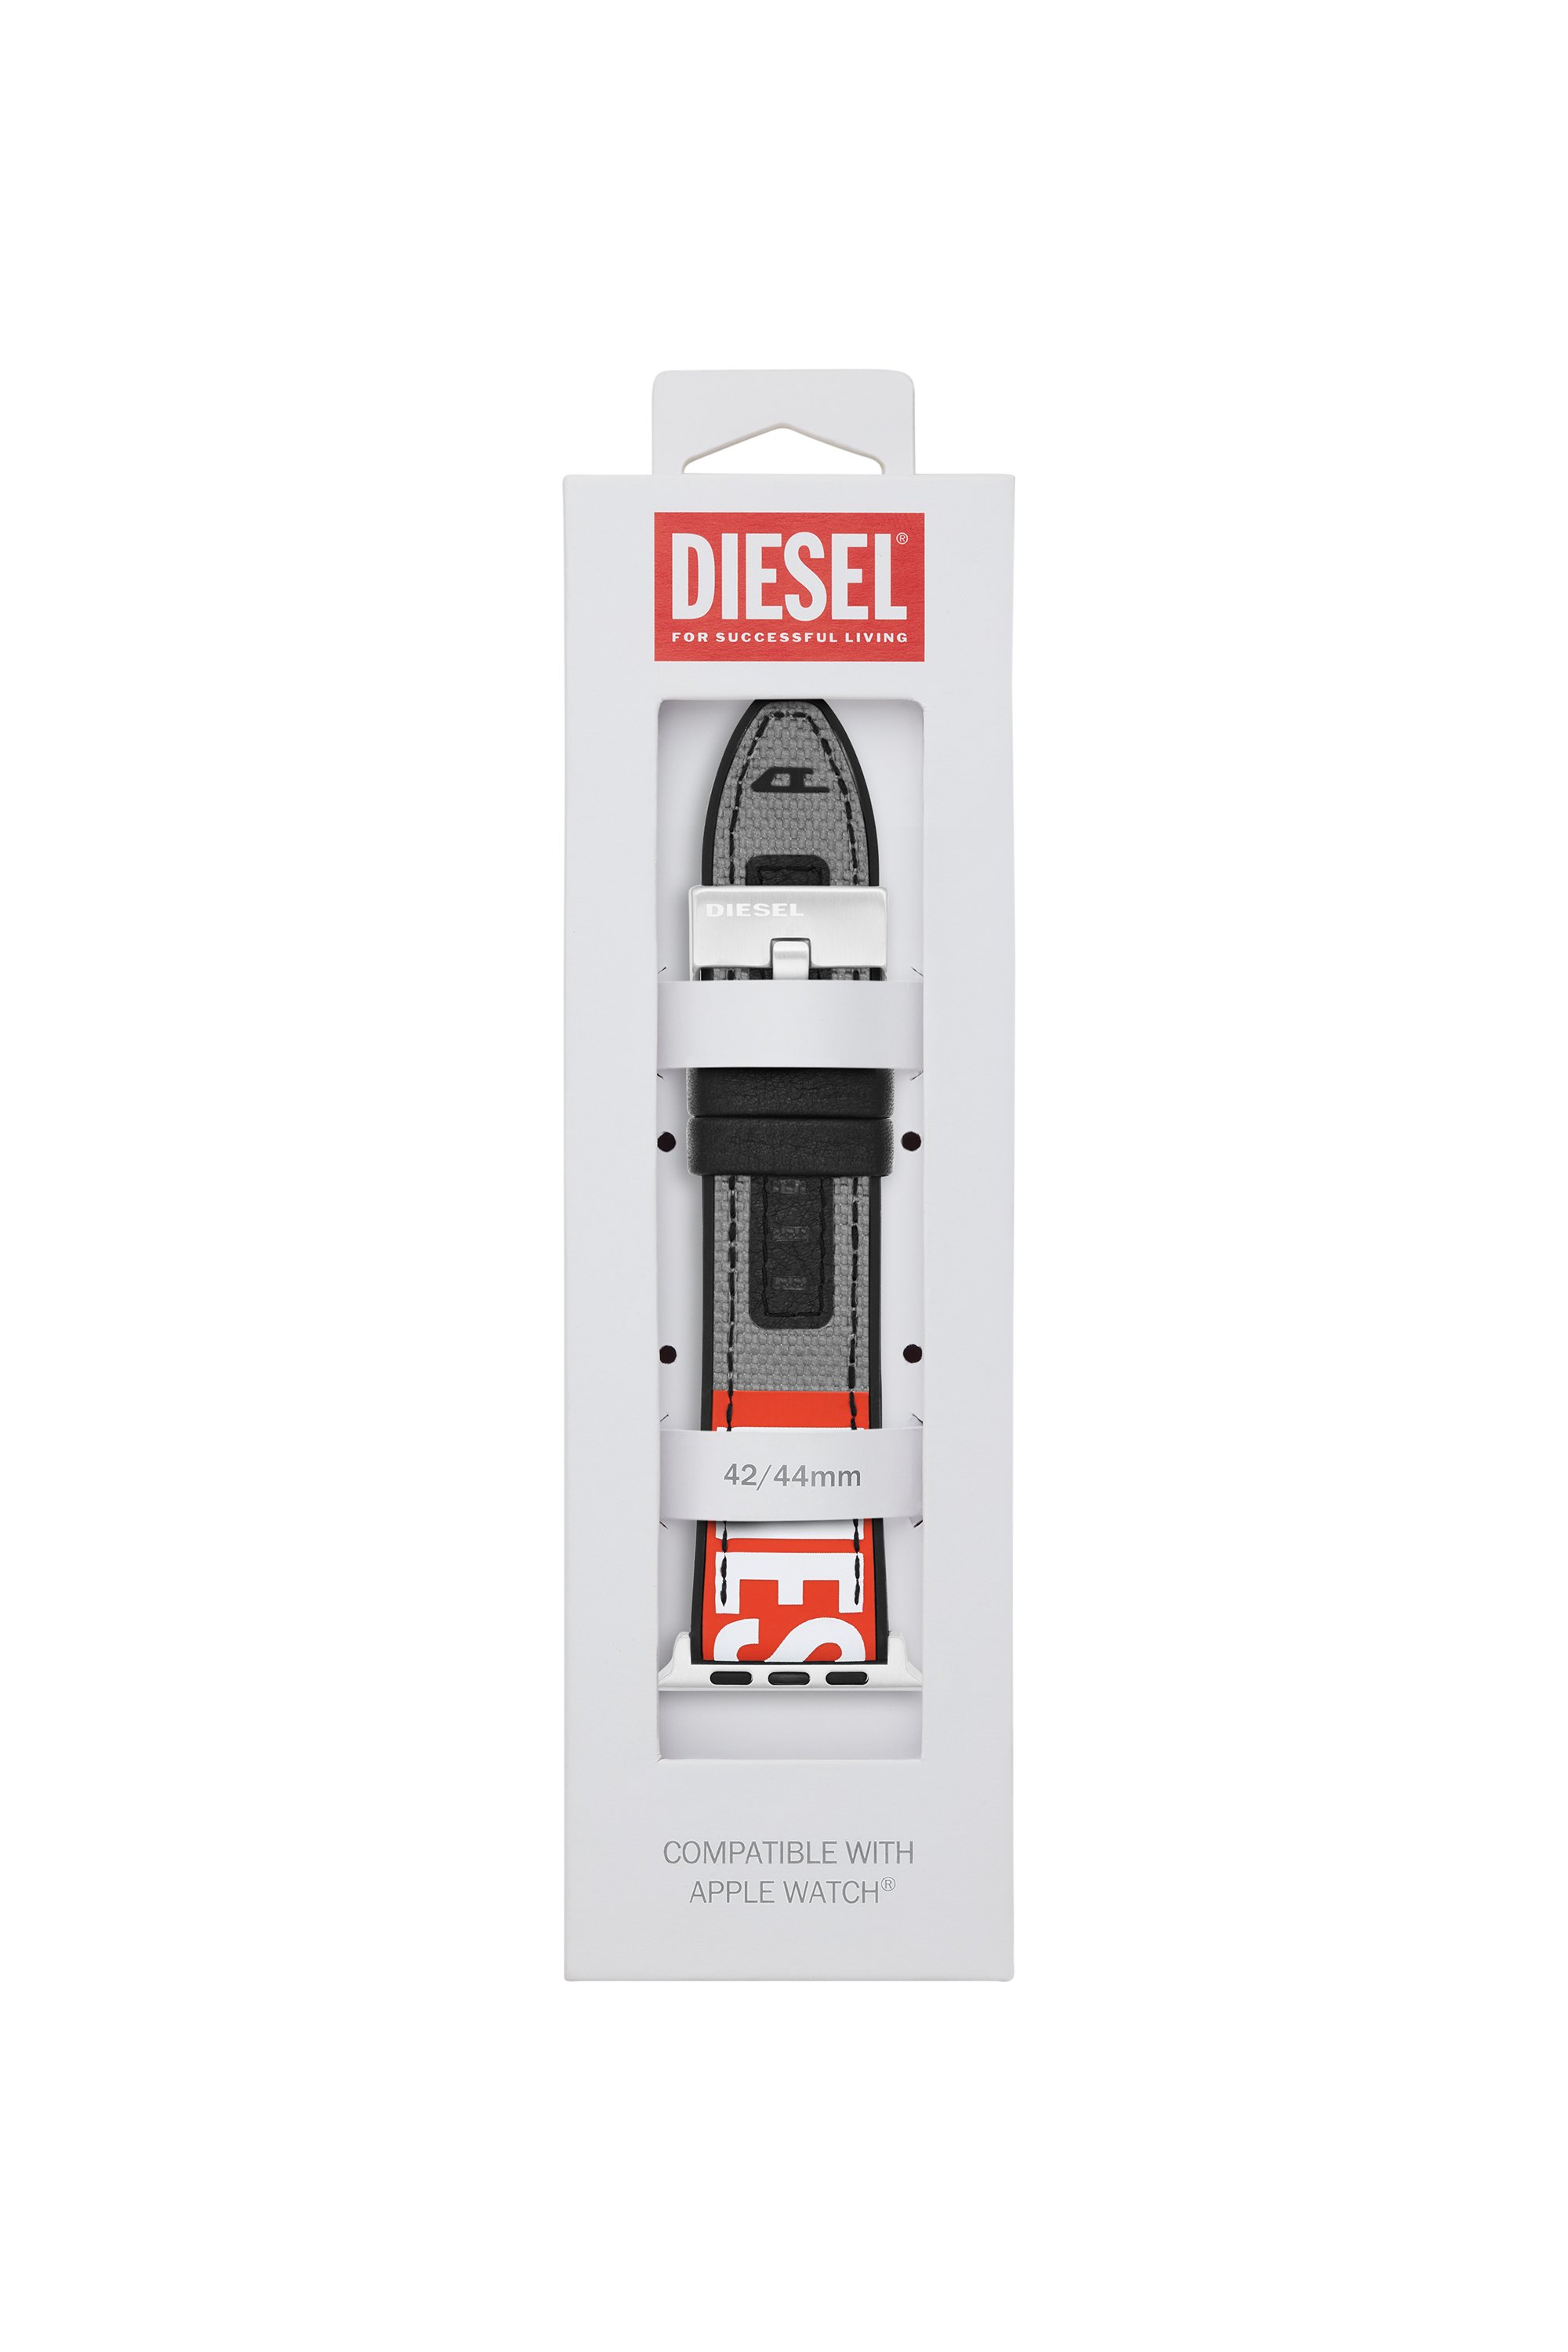 Diesel - DSS006, Gris - Image 2